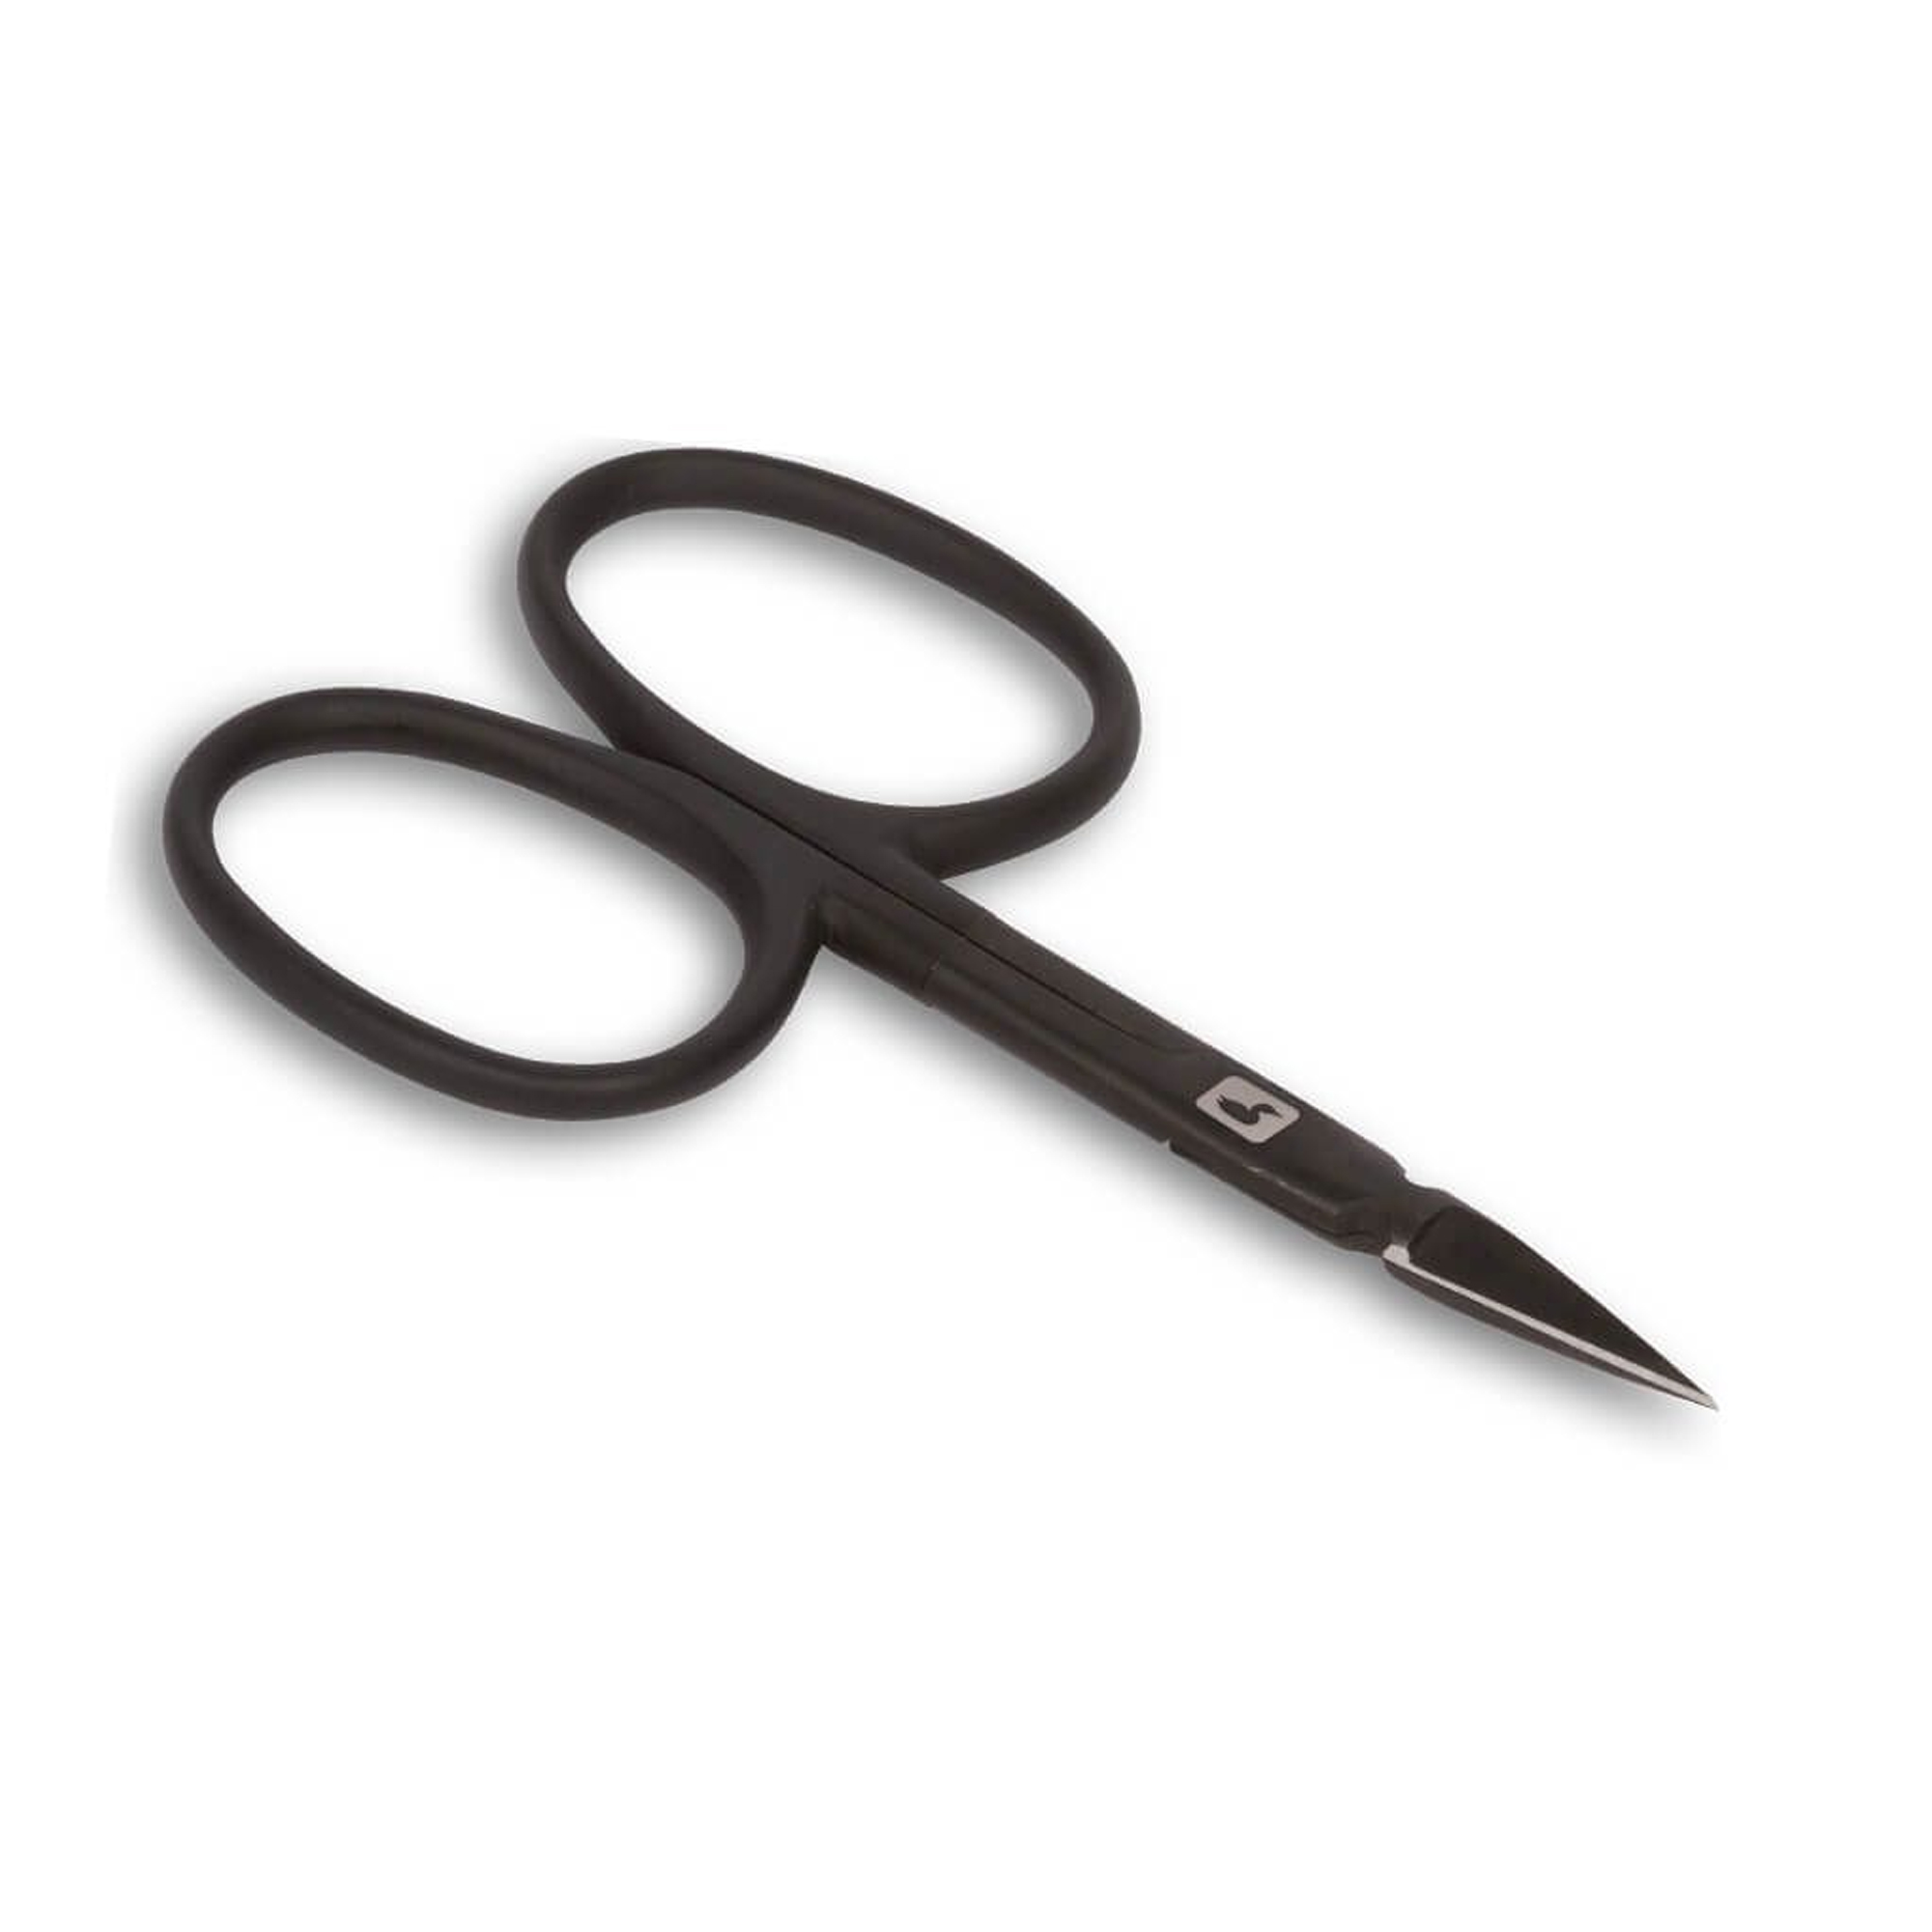 Loon Arrow Point Scissors